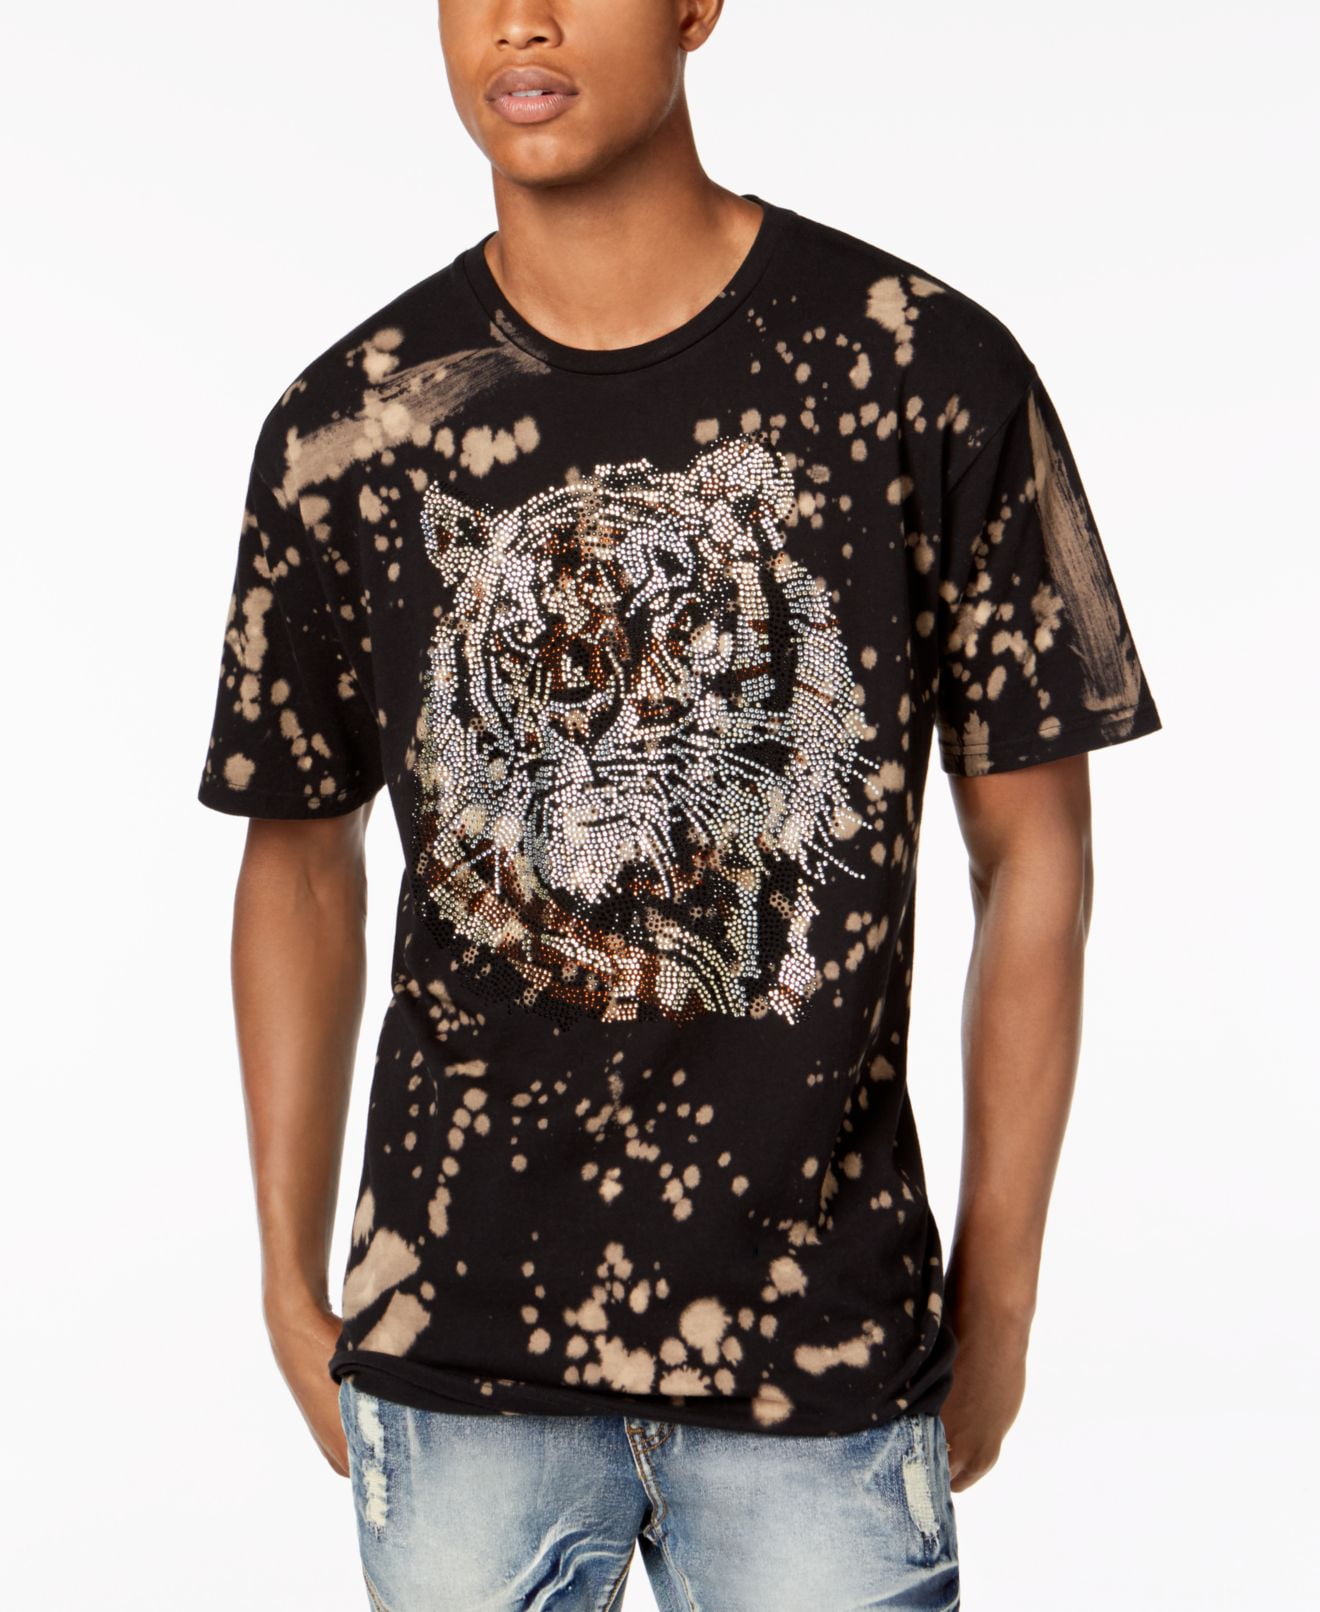 Reason Clothing - Mens T-Shirt Graphic Rhinestone Tiger Animal Tee XL ...